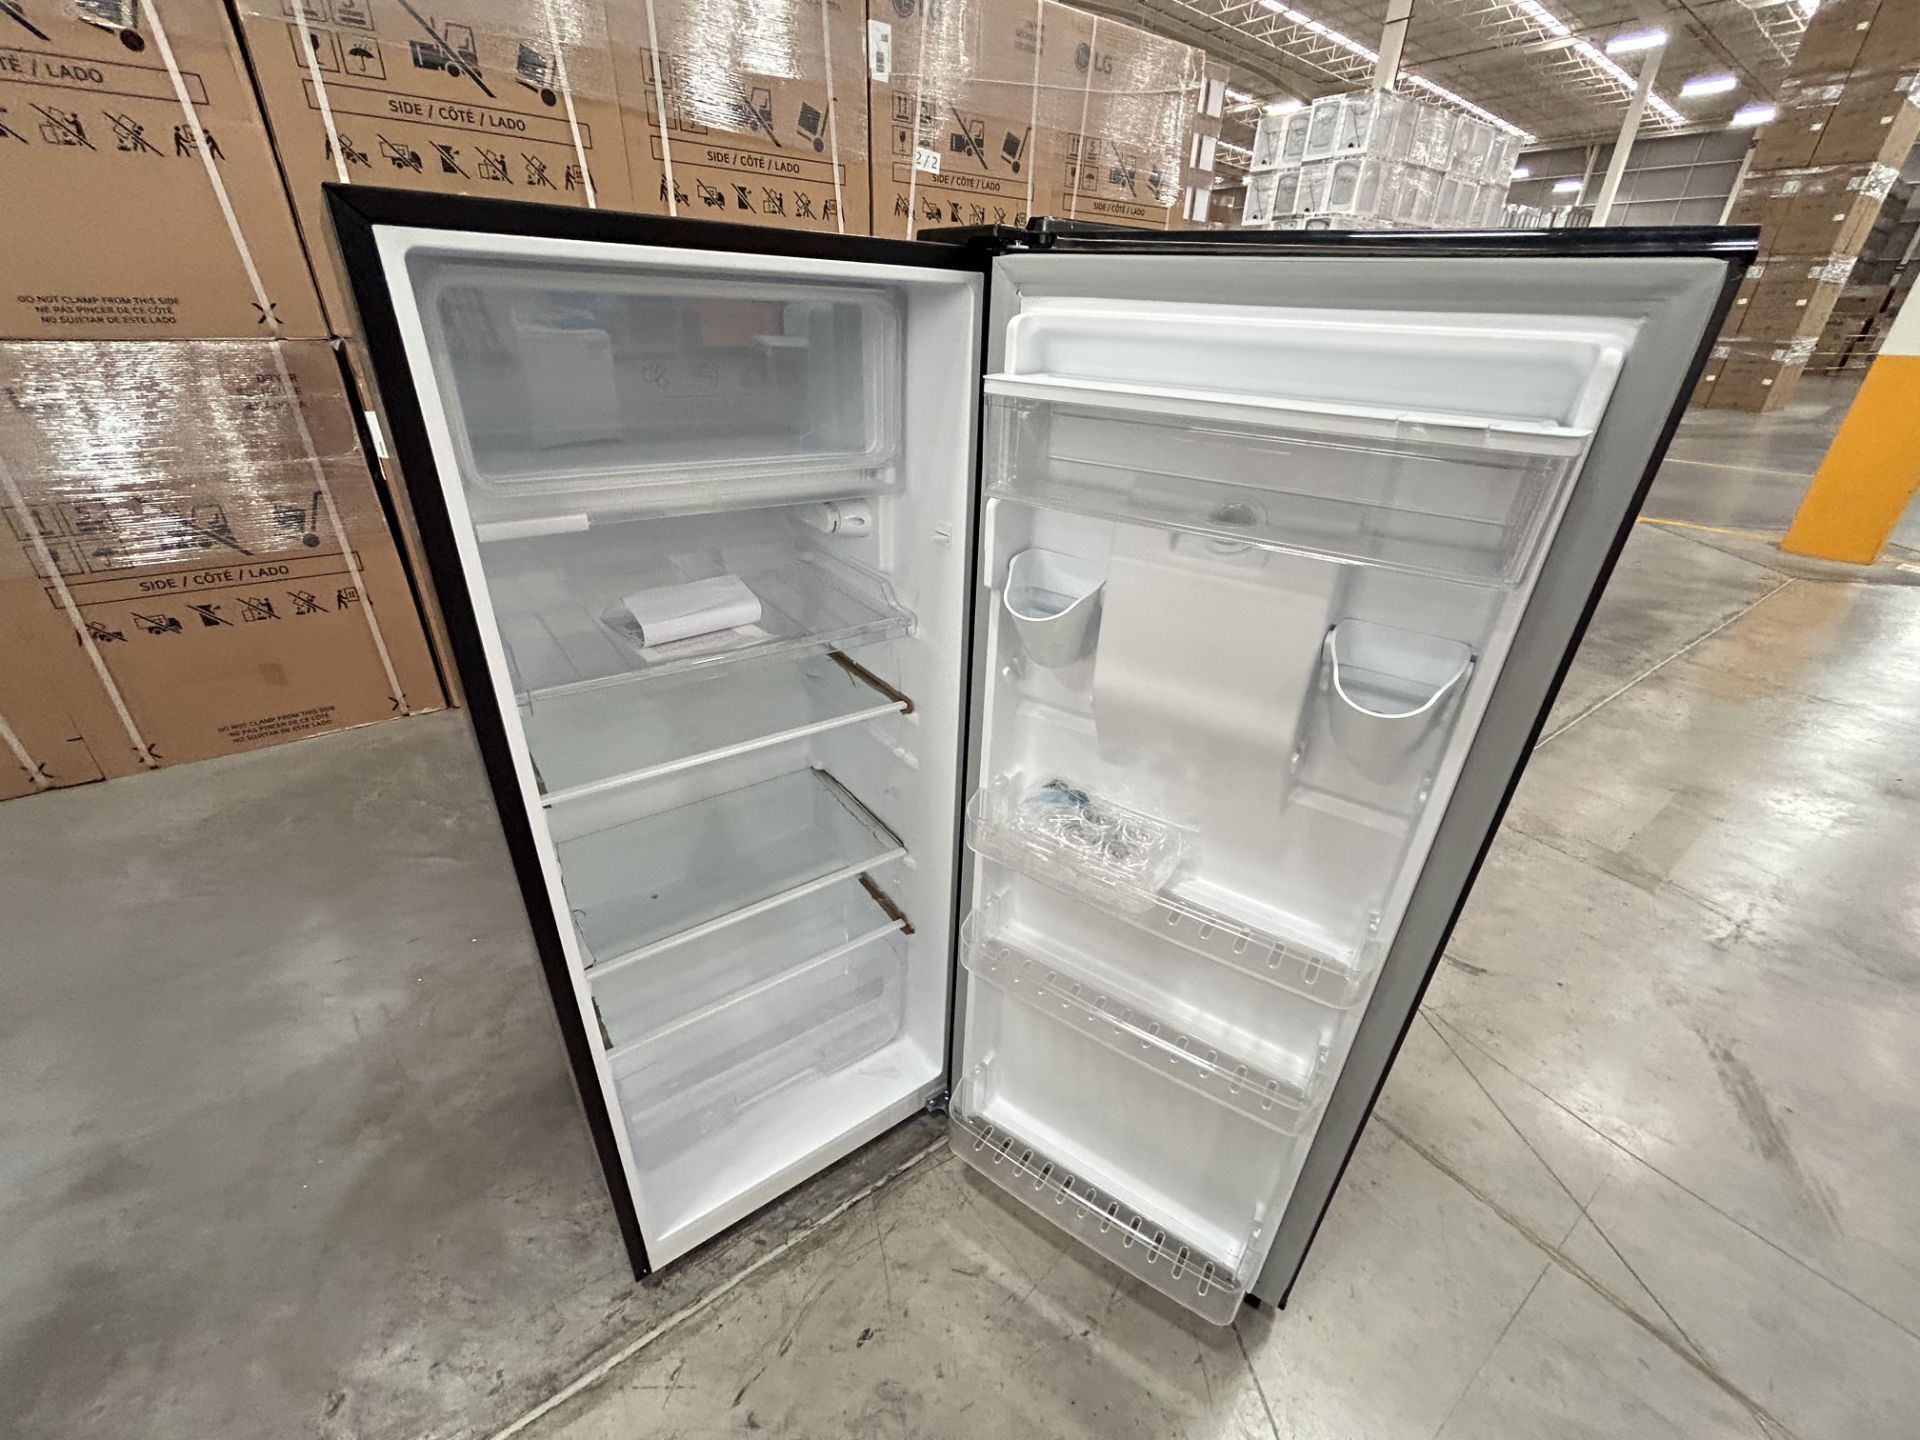 Lote de 2 Refrigeradores, Contiene: 1 Refrigerador con dispensador de agua Marca ATVIO, Modelo AT6. - Image 5 of 12